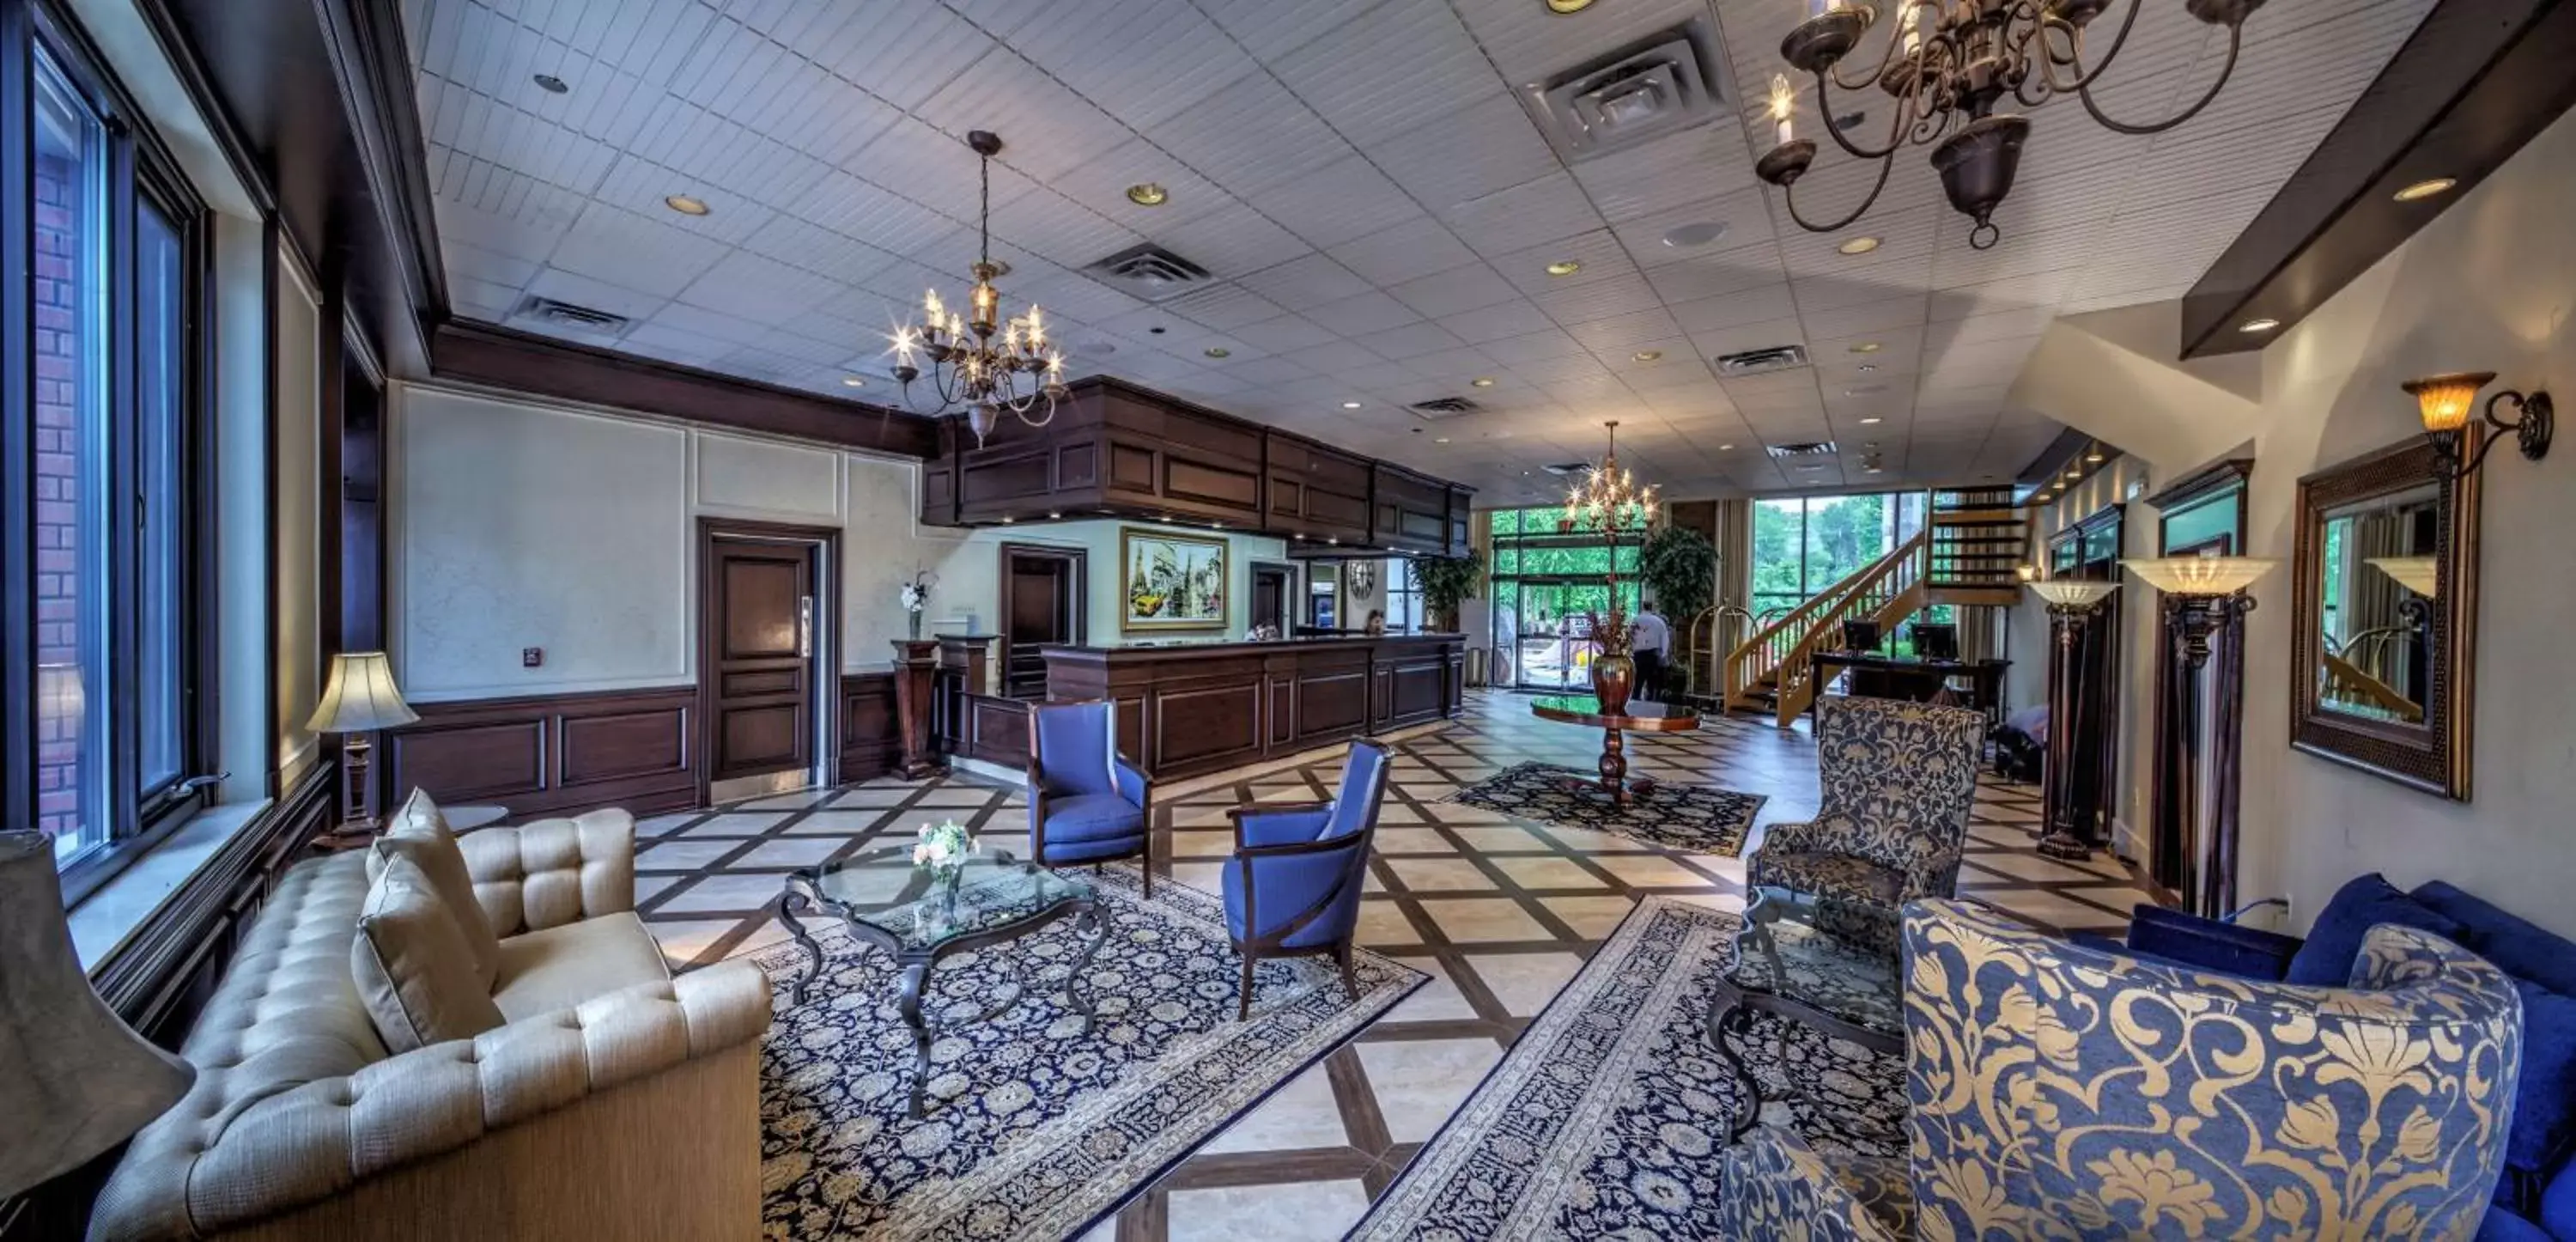 Lobby or reception in Best Western Plus Fairfield Executive Inn